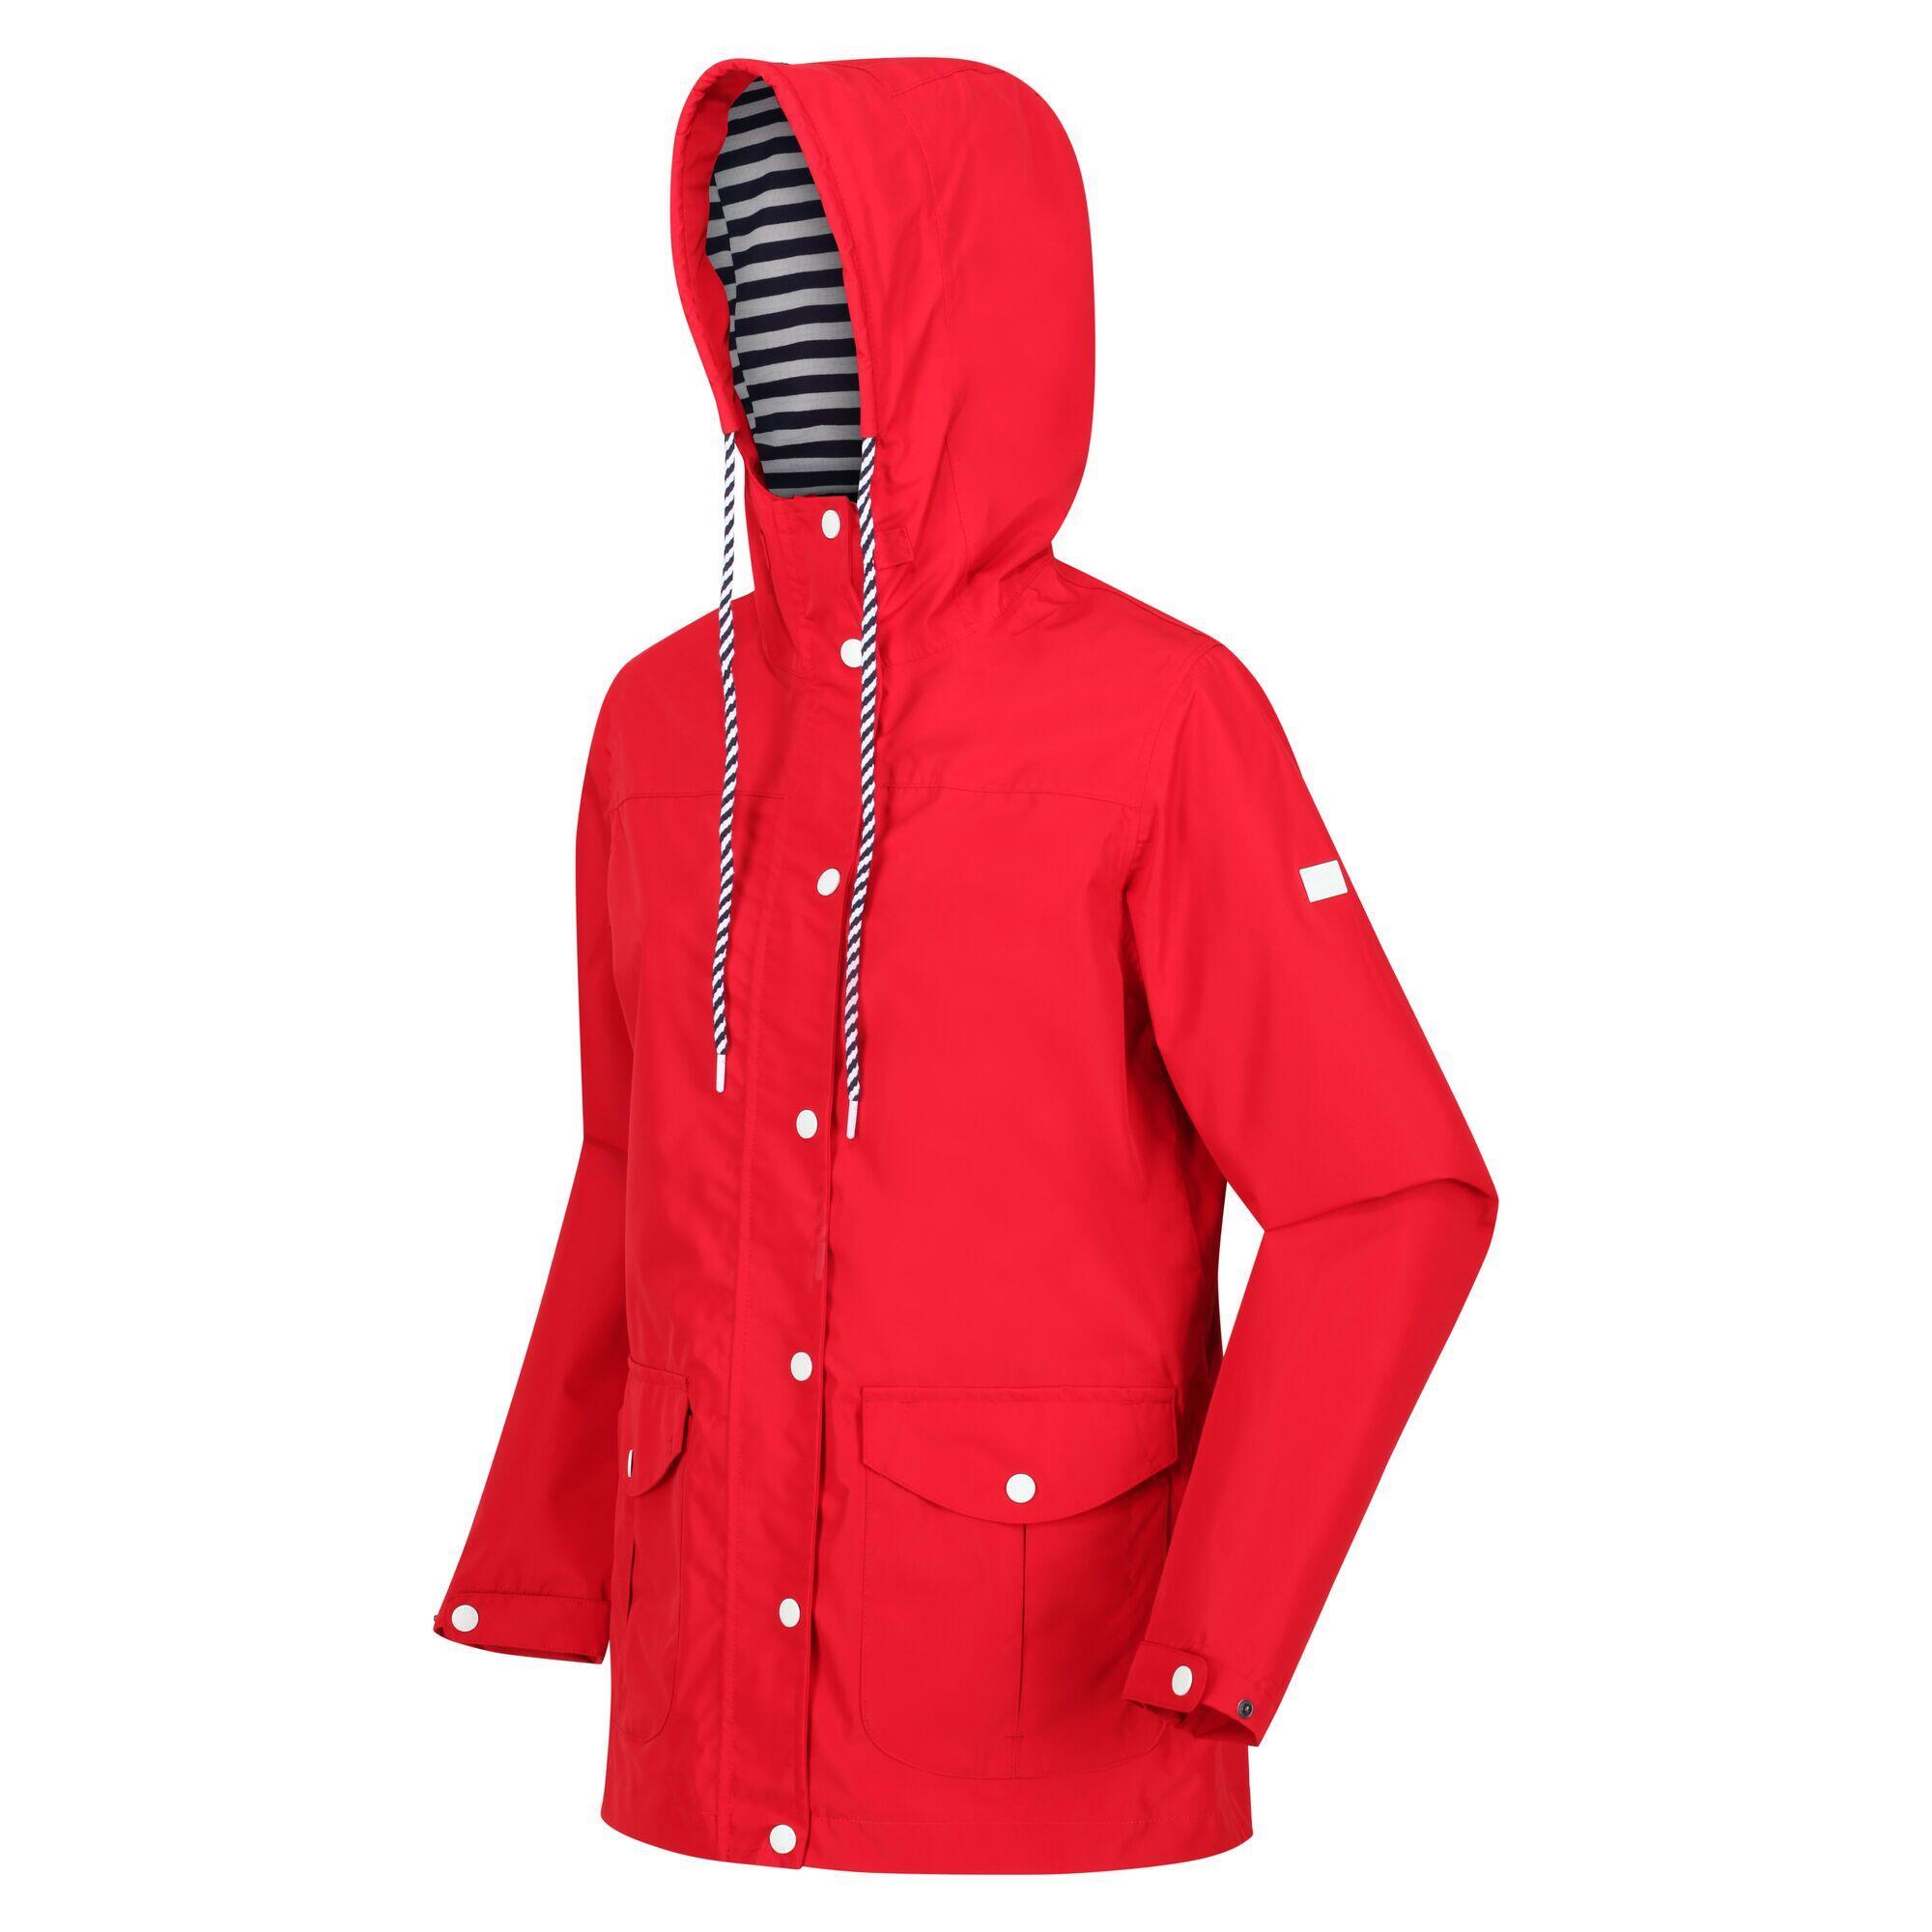 Куртка женская хлопковая прогулочная Regatta Bayarma, красный